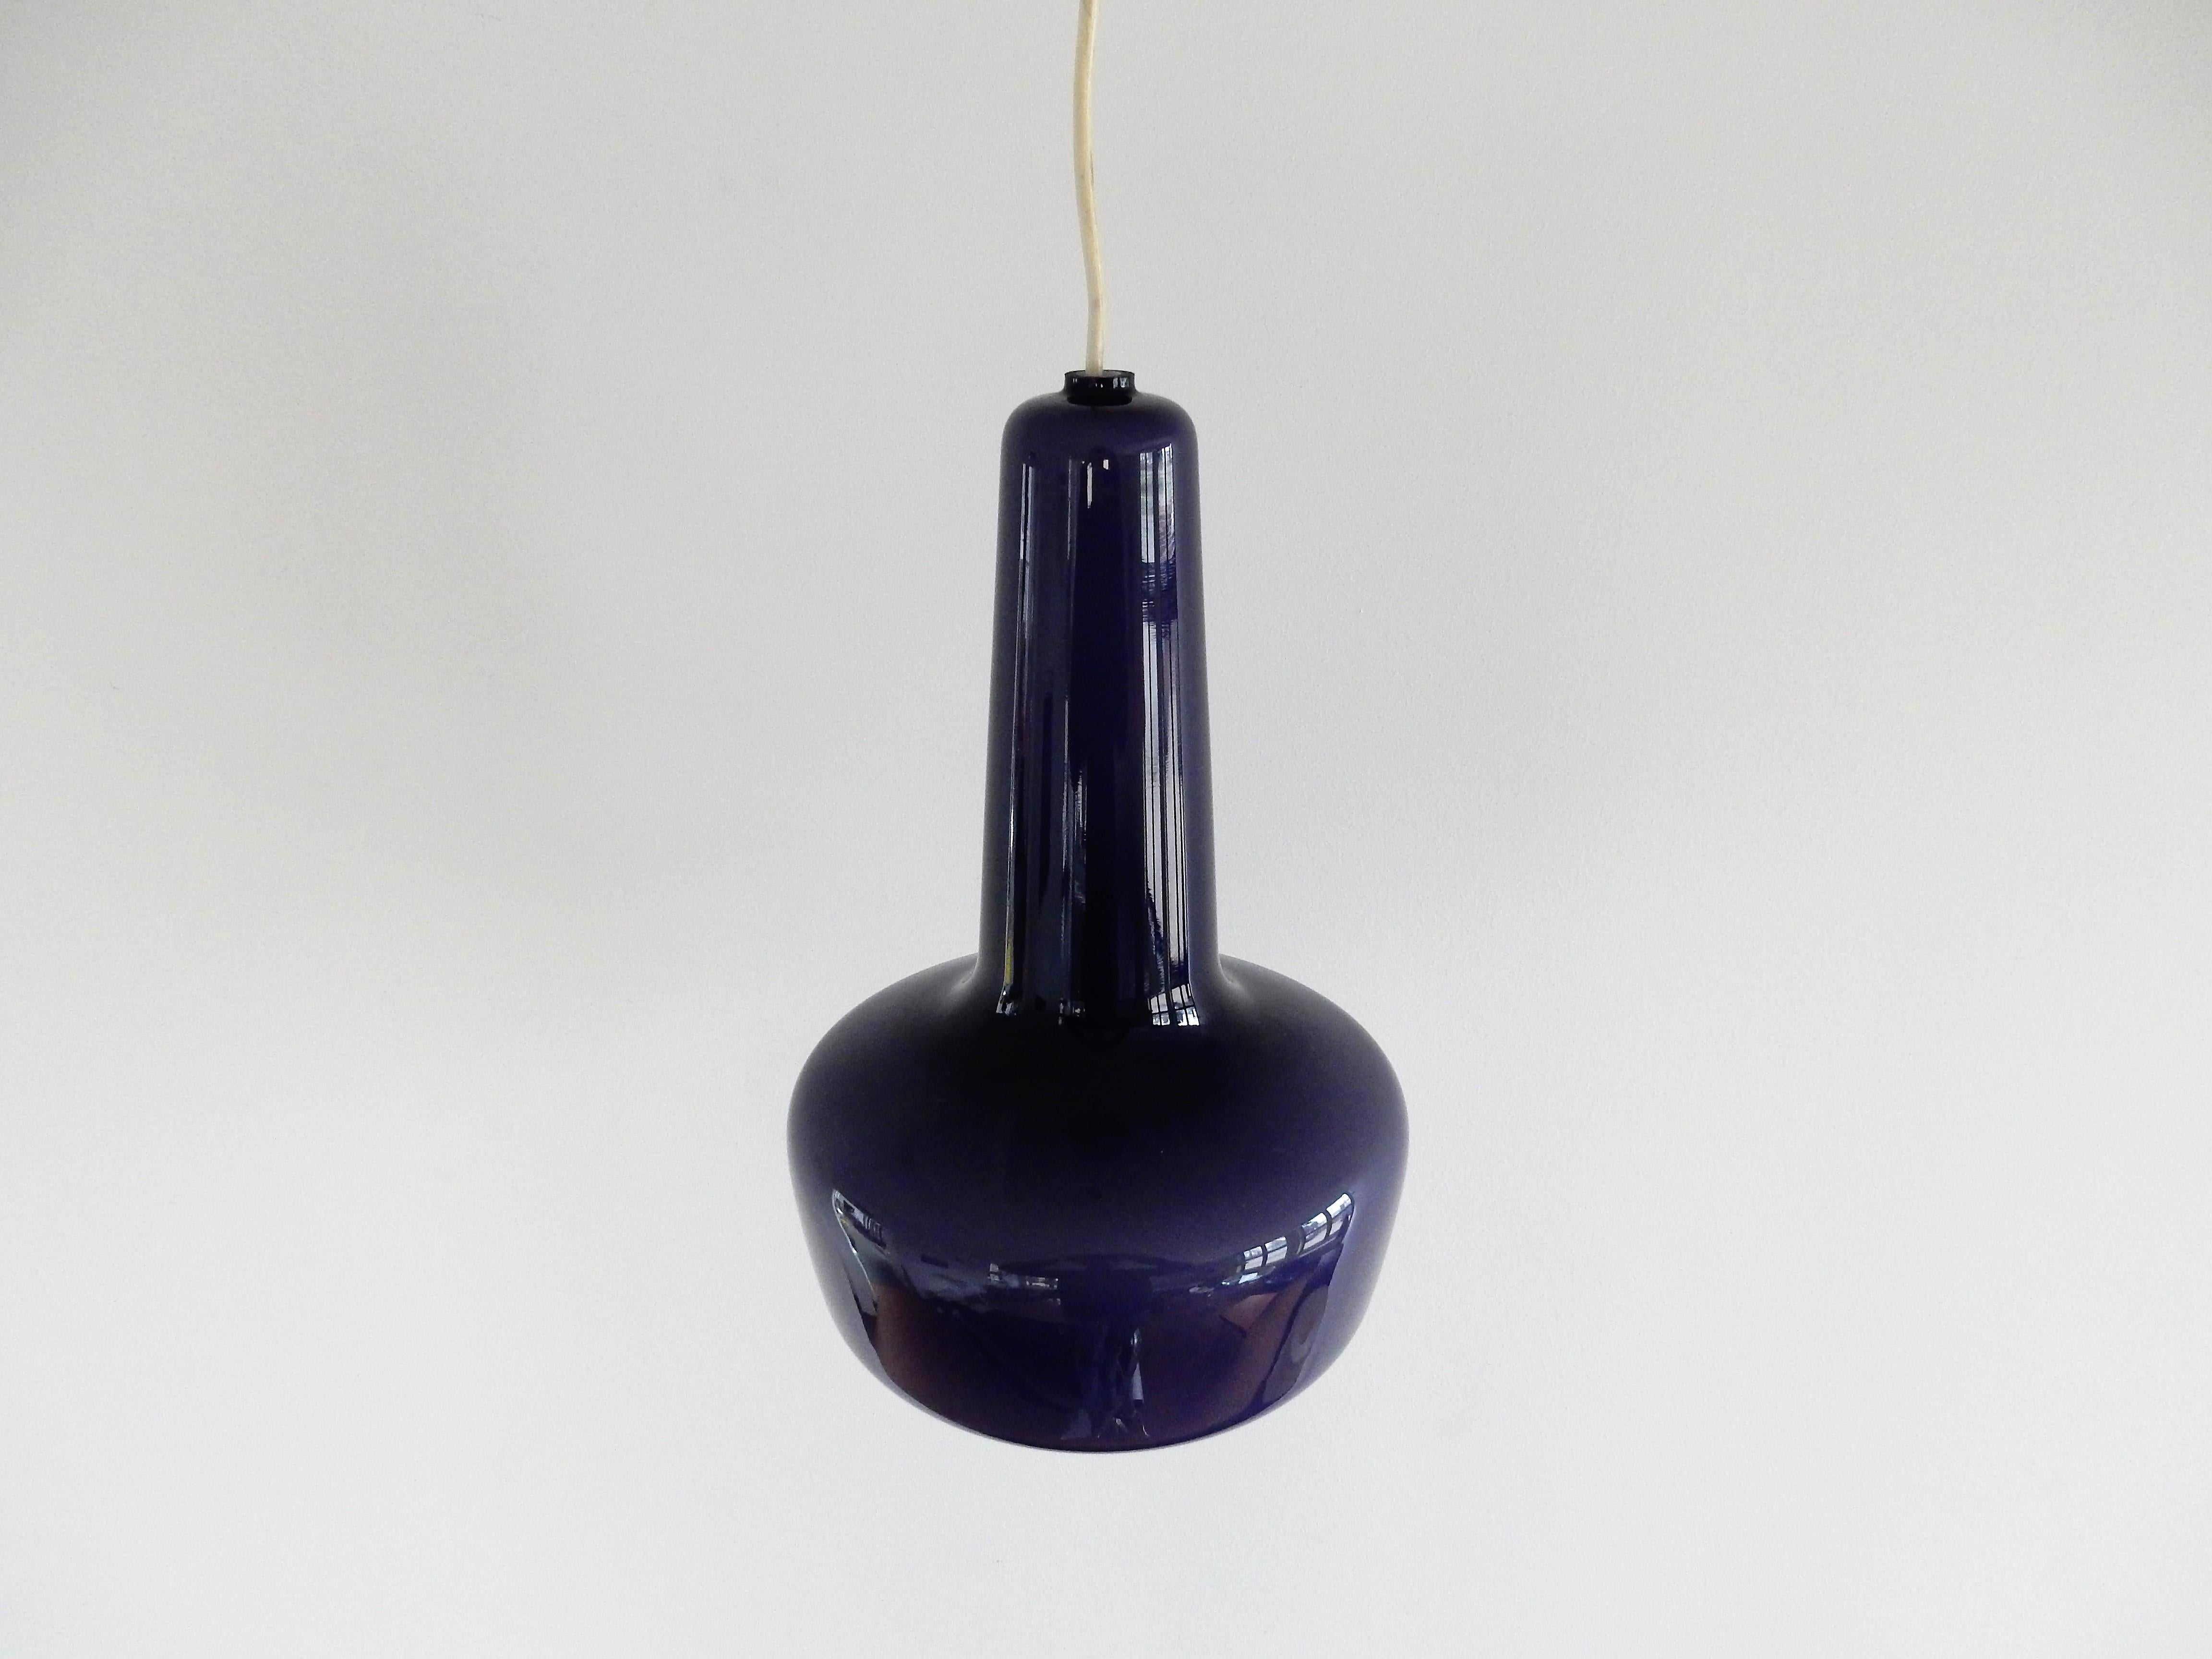 La Kreta est une lampe suspendue en verre, conçue par Jacob E. Bang en 1964 et produite par Fog & Mørup en collaboration avec Holmegaard Glassworks. La lampe a été commercialisée en cinq couleurs : gris clair, vert olive, jaune, opale et cette